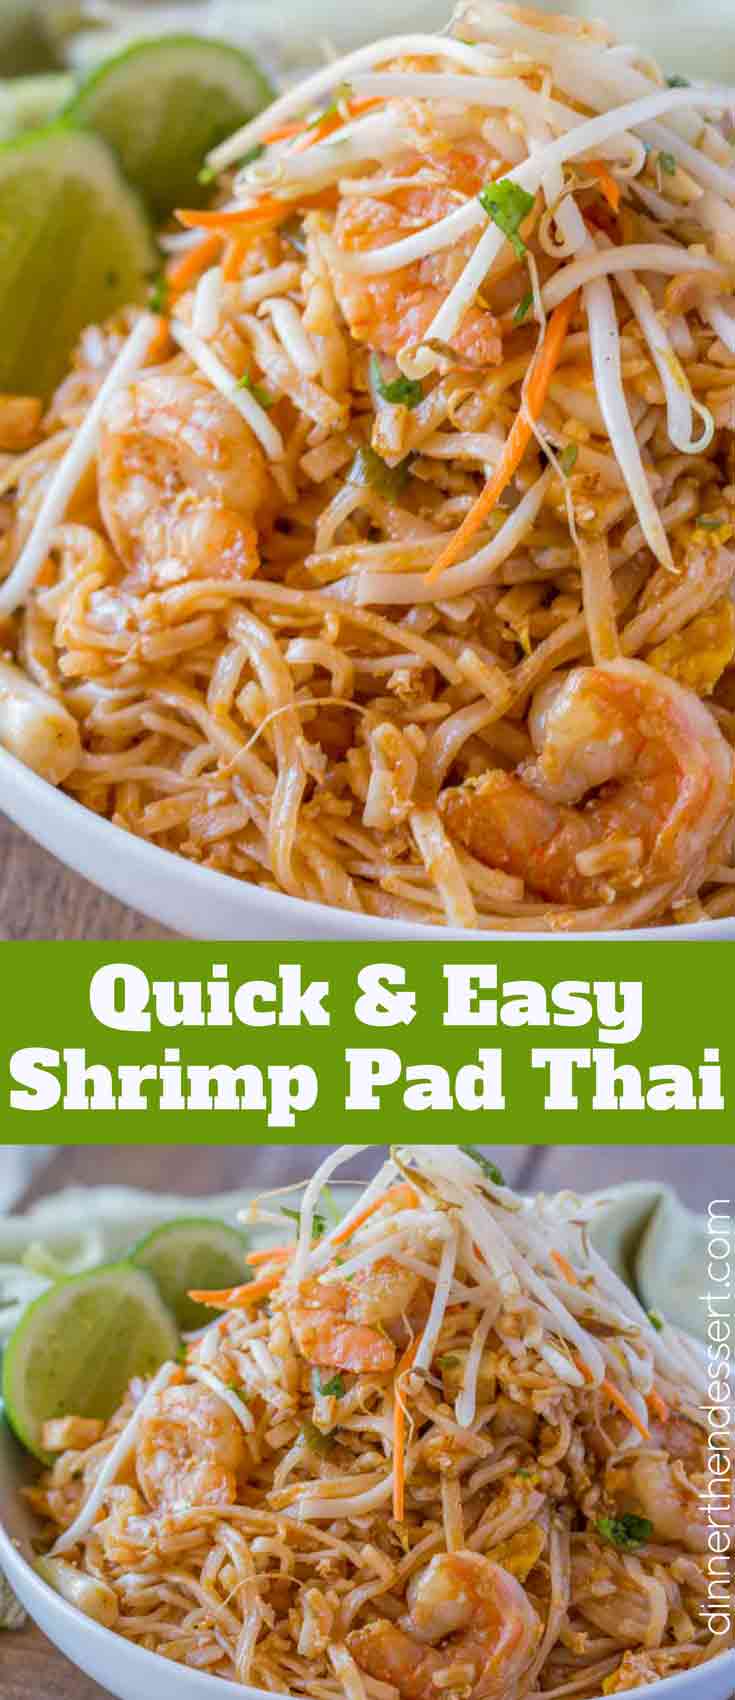 Traditional Shrimp Pad Thai